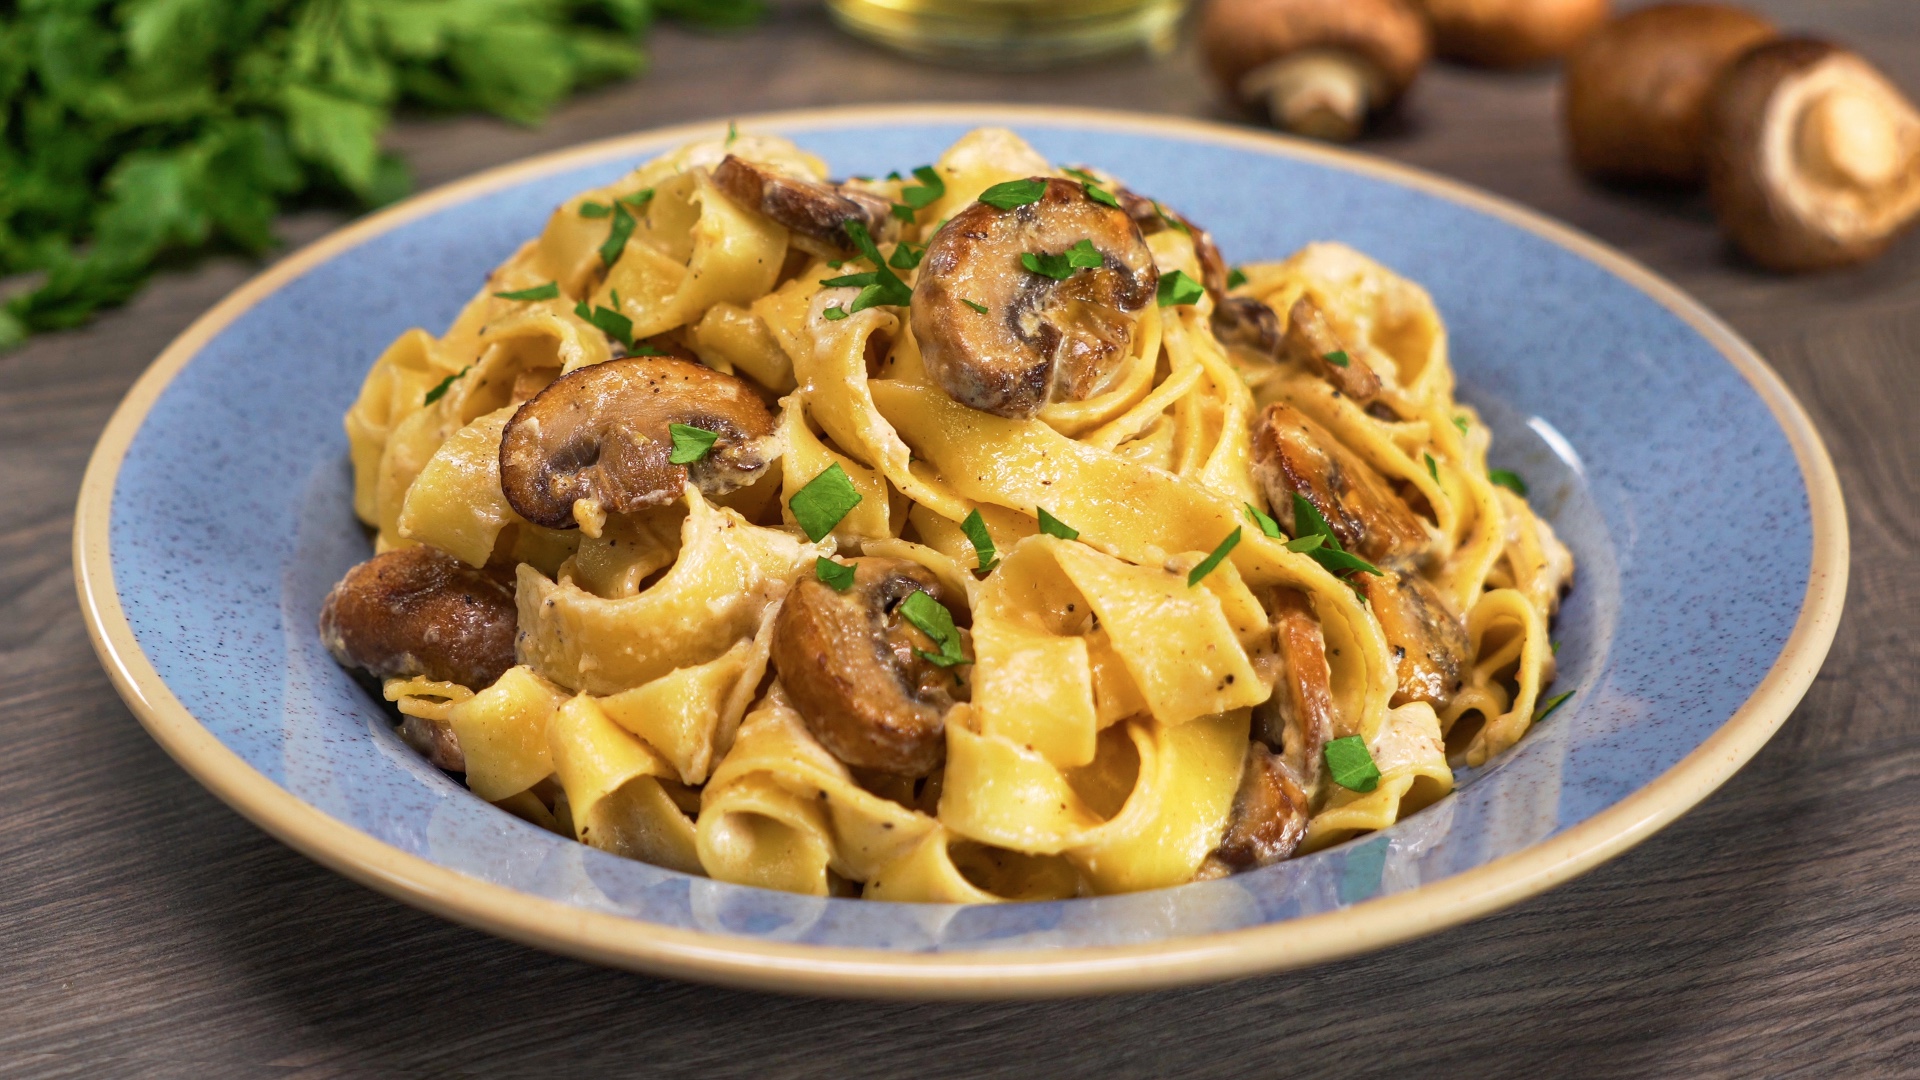 Паста с грибами. Итальянская кухня - пошаговый рецепт с фото и видео от  Всегда Вкусно!